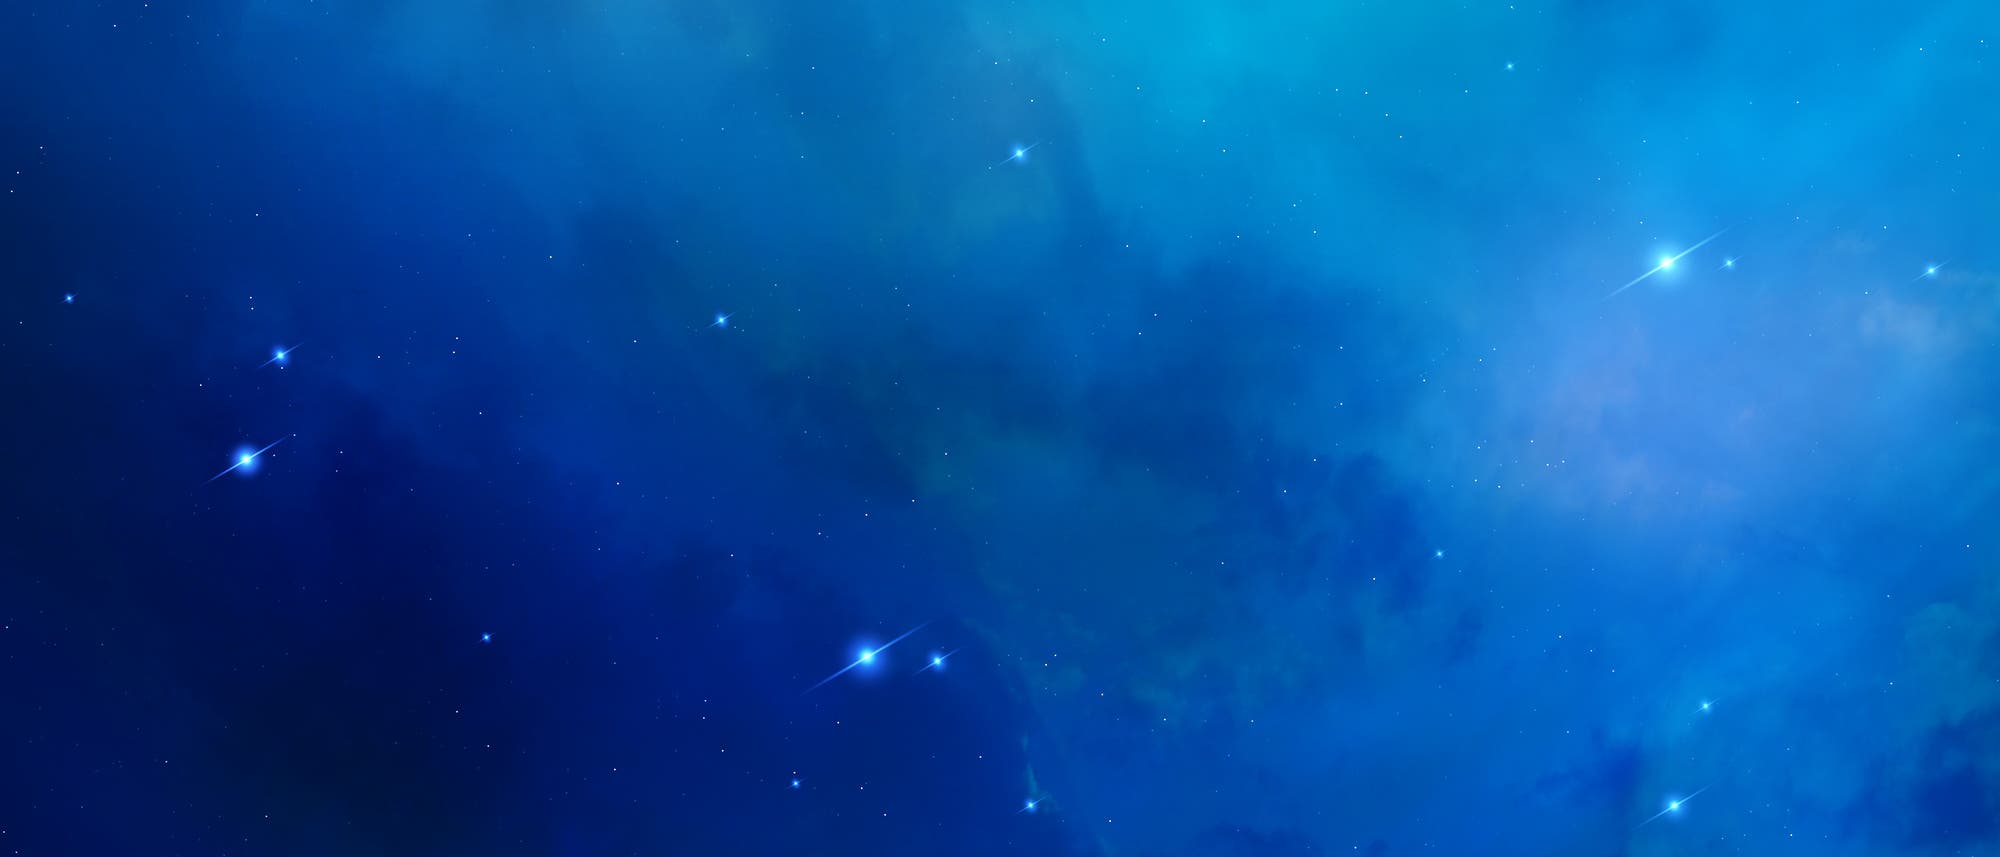 Blaunebliger Sternenhintergrund aus dem einige Sterne hell herausleuchten.